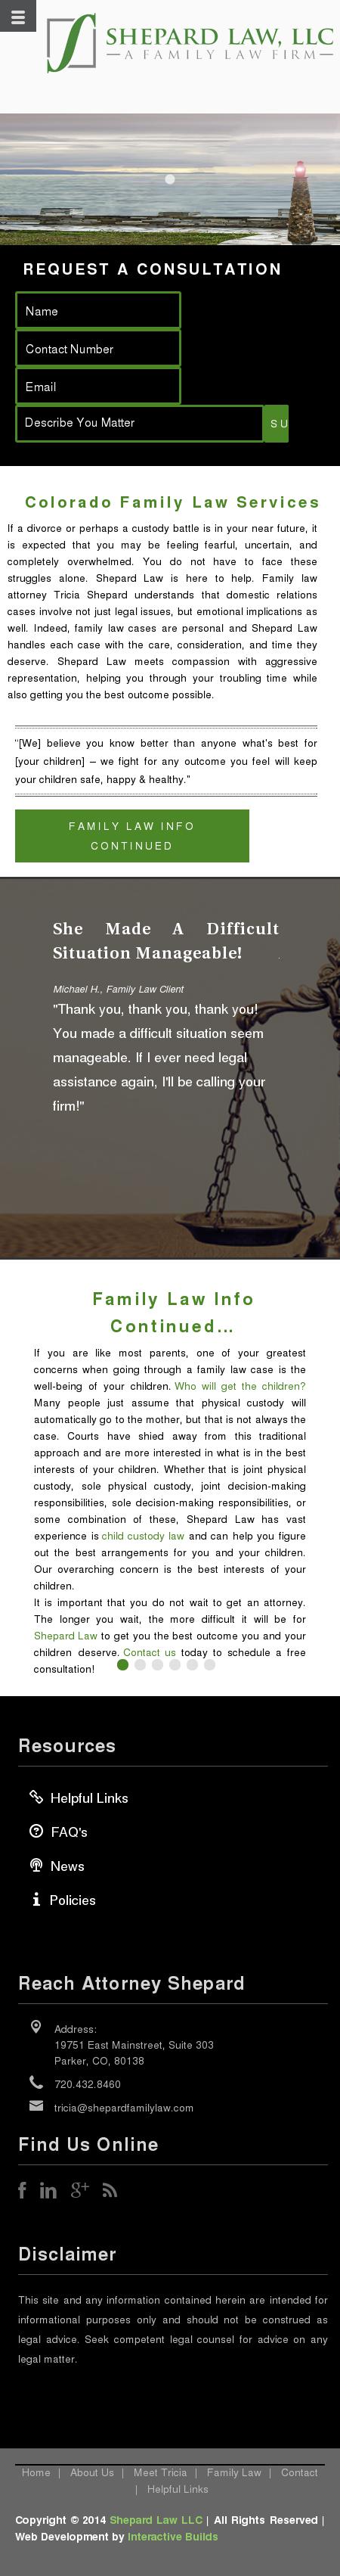 Shepard Law, LLC - Parker CO Lawyers